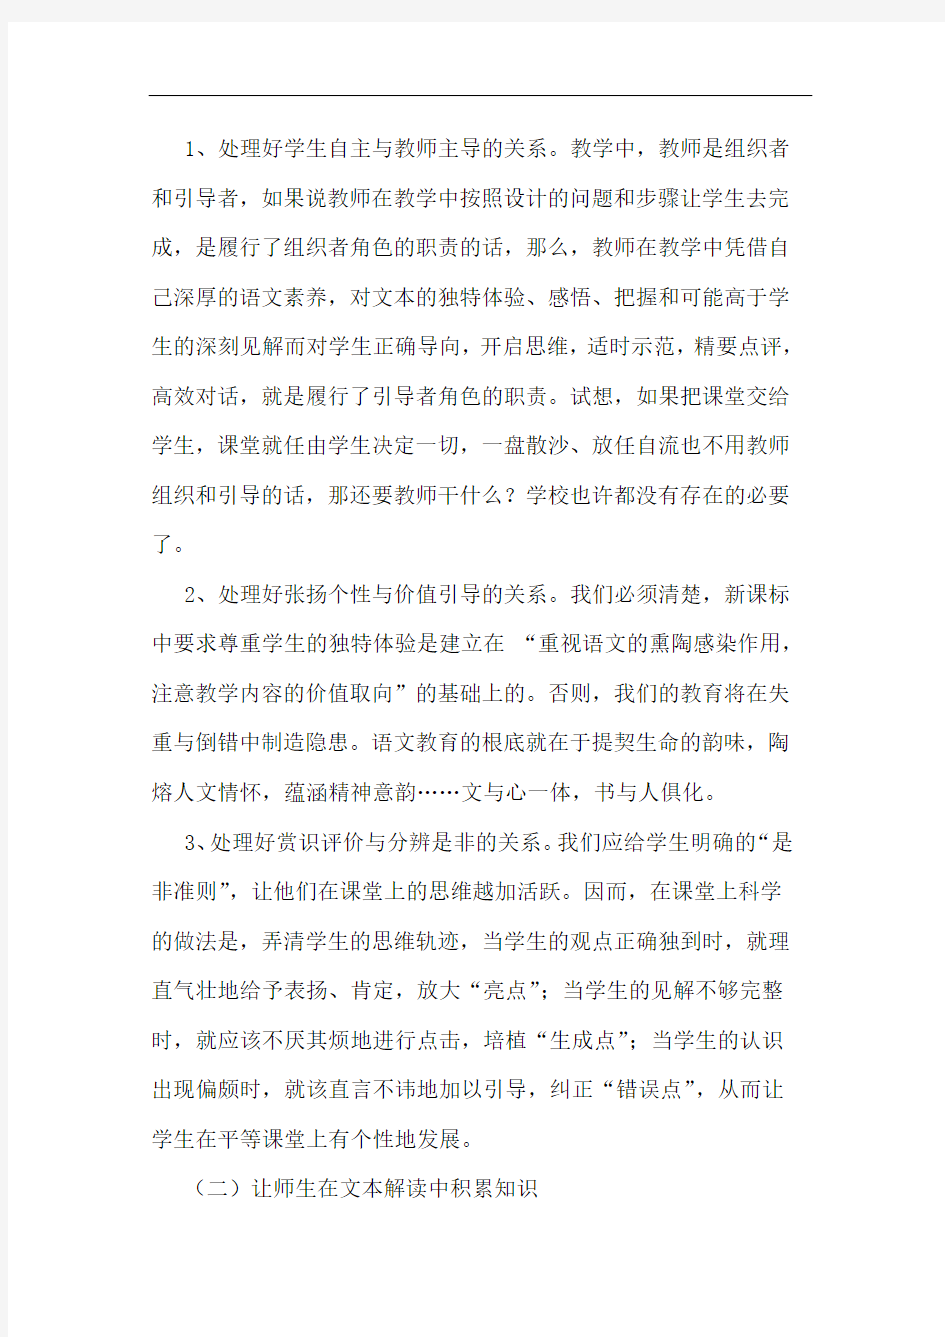 新课标下初中语文课堂教学反思对策论文